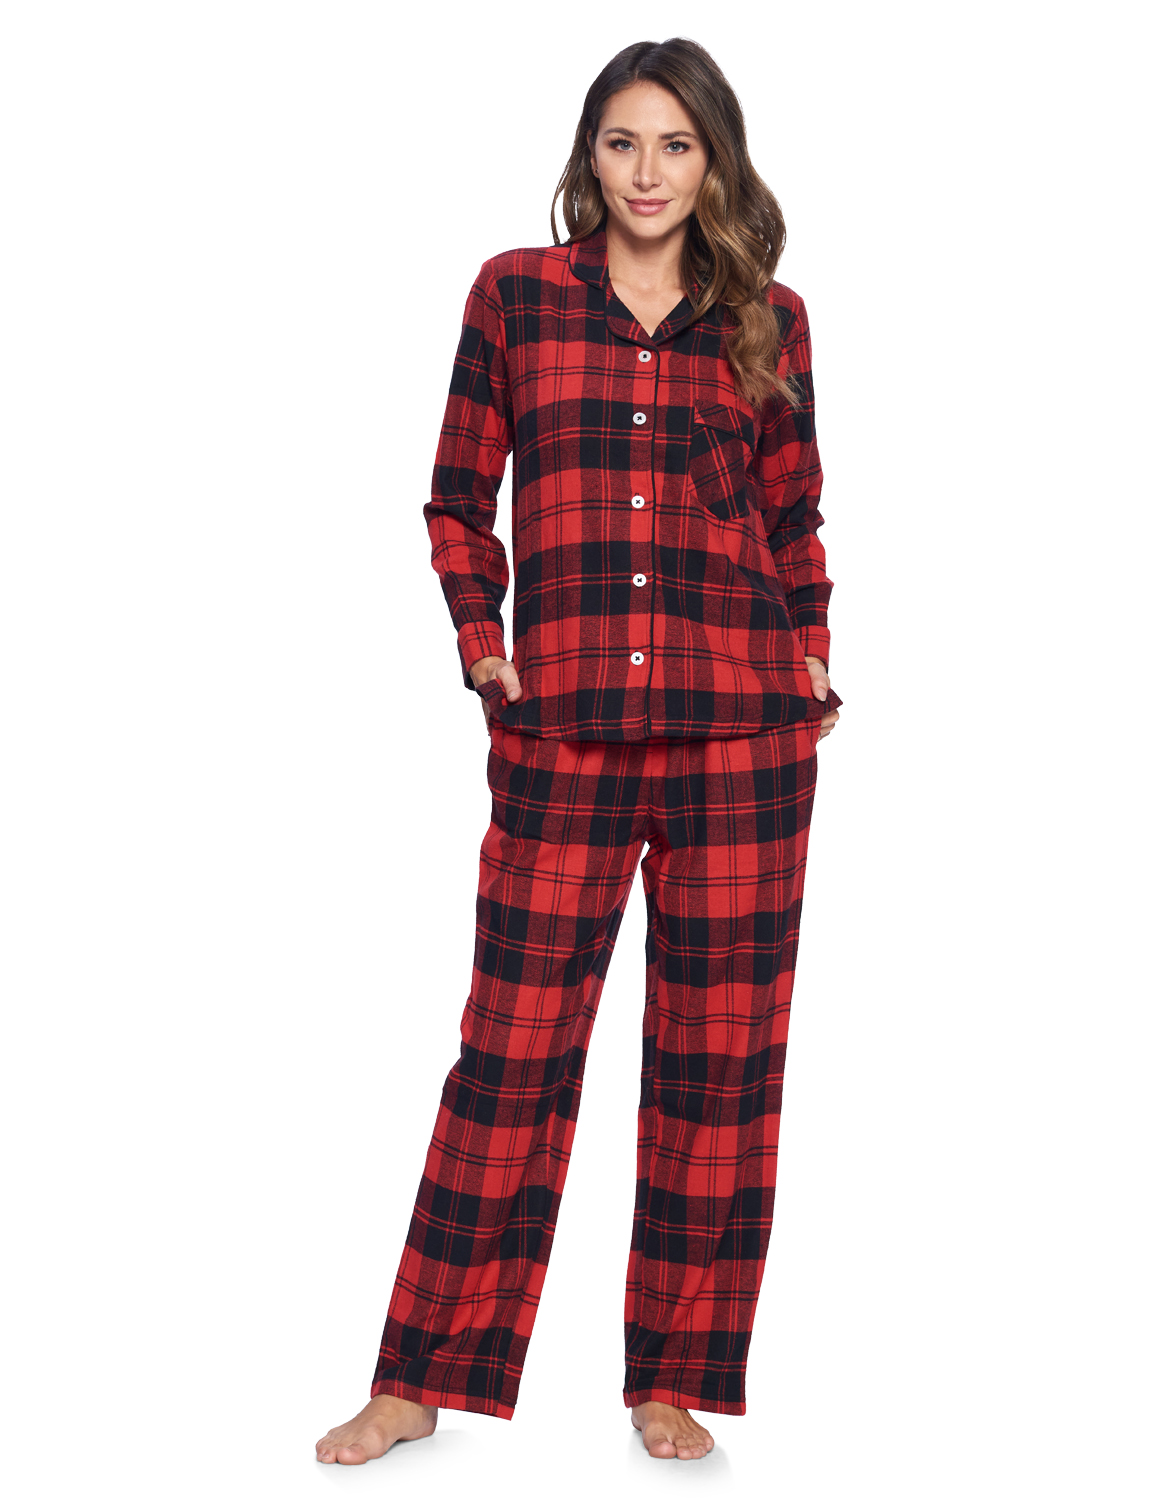 Ashford & Brooks Women's Flannel Plaid Pajamas Long Pj Set - Red Black ...